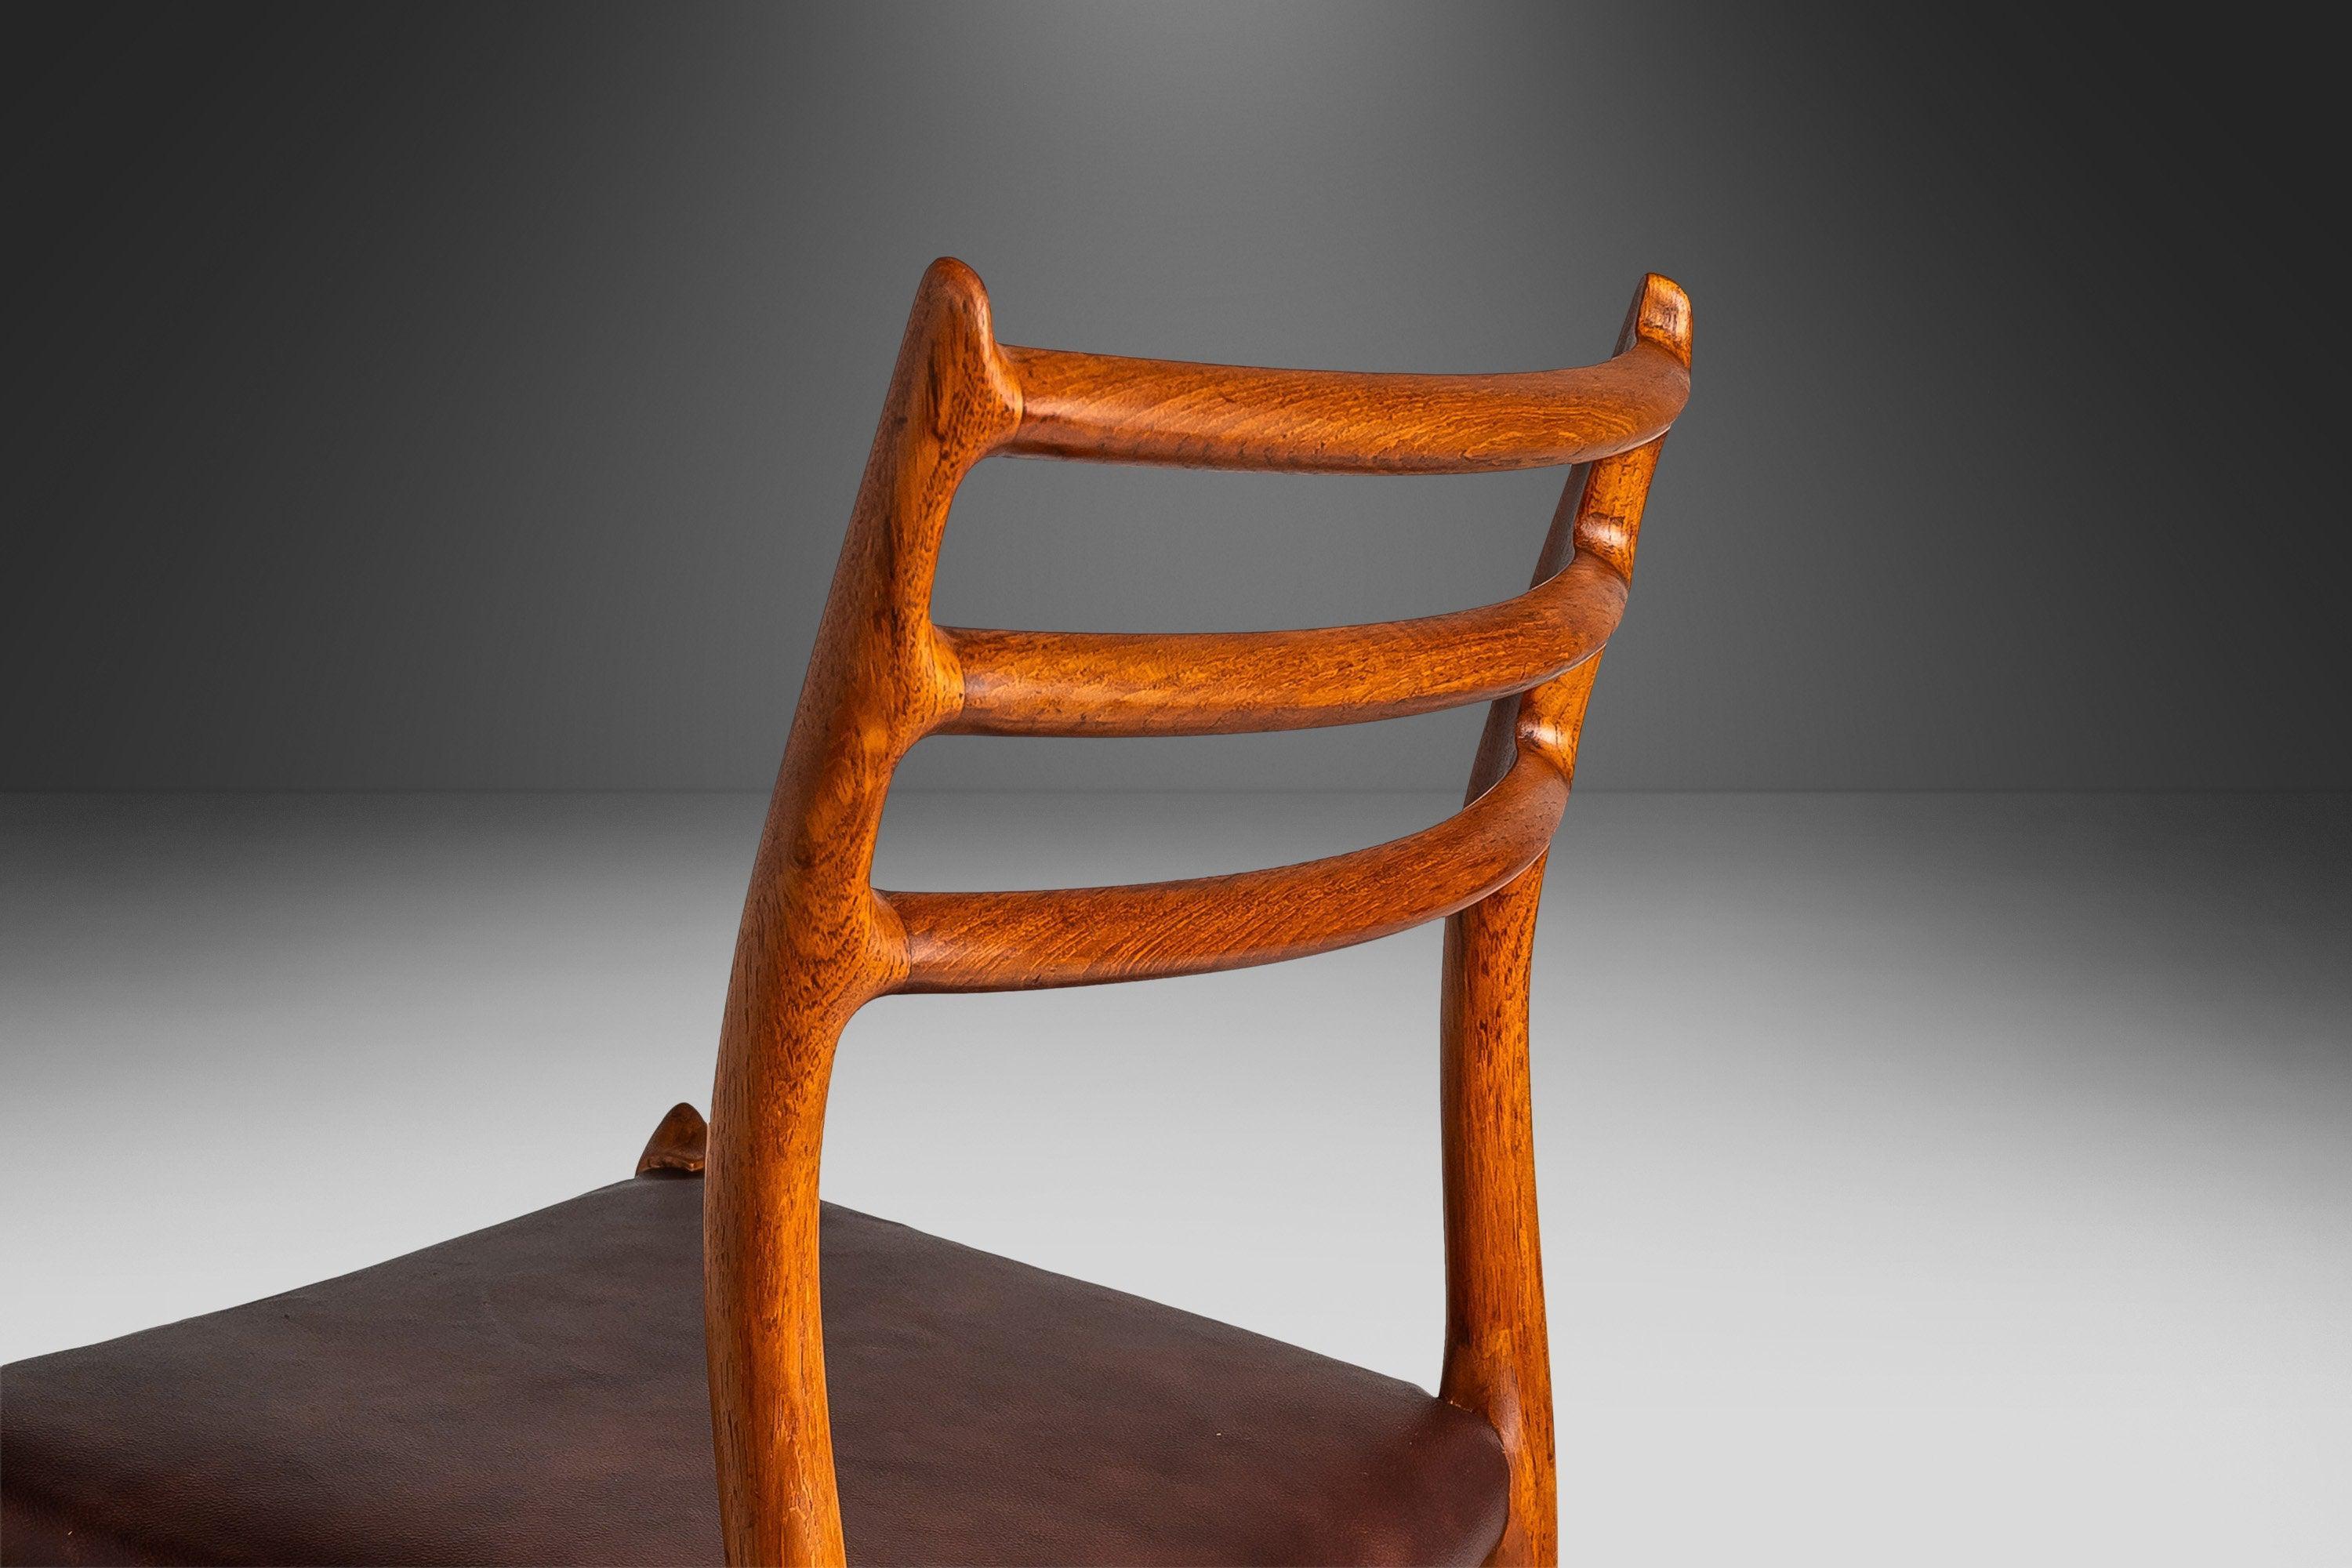 Conçue par le visionnaire Niels Otto Møller en 1962, la chaise modèle 78 représente l'apogée de sa carrière de designer, qui a contribué à l'essor du célèbre mouvement moderne scandinave qui a balayé l'Europe d'après-guerre et, finalement, les